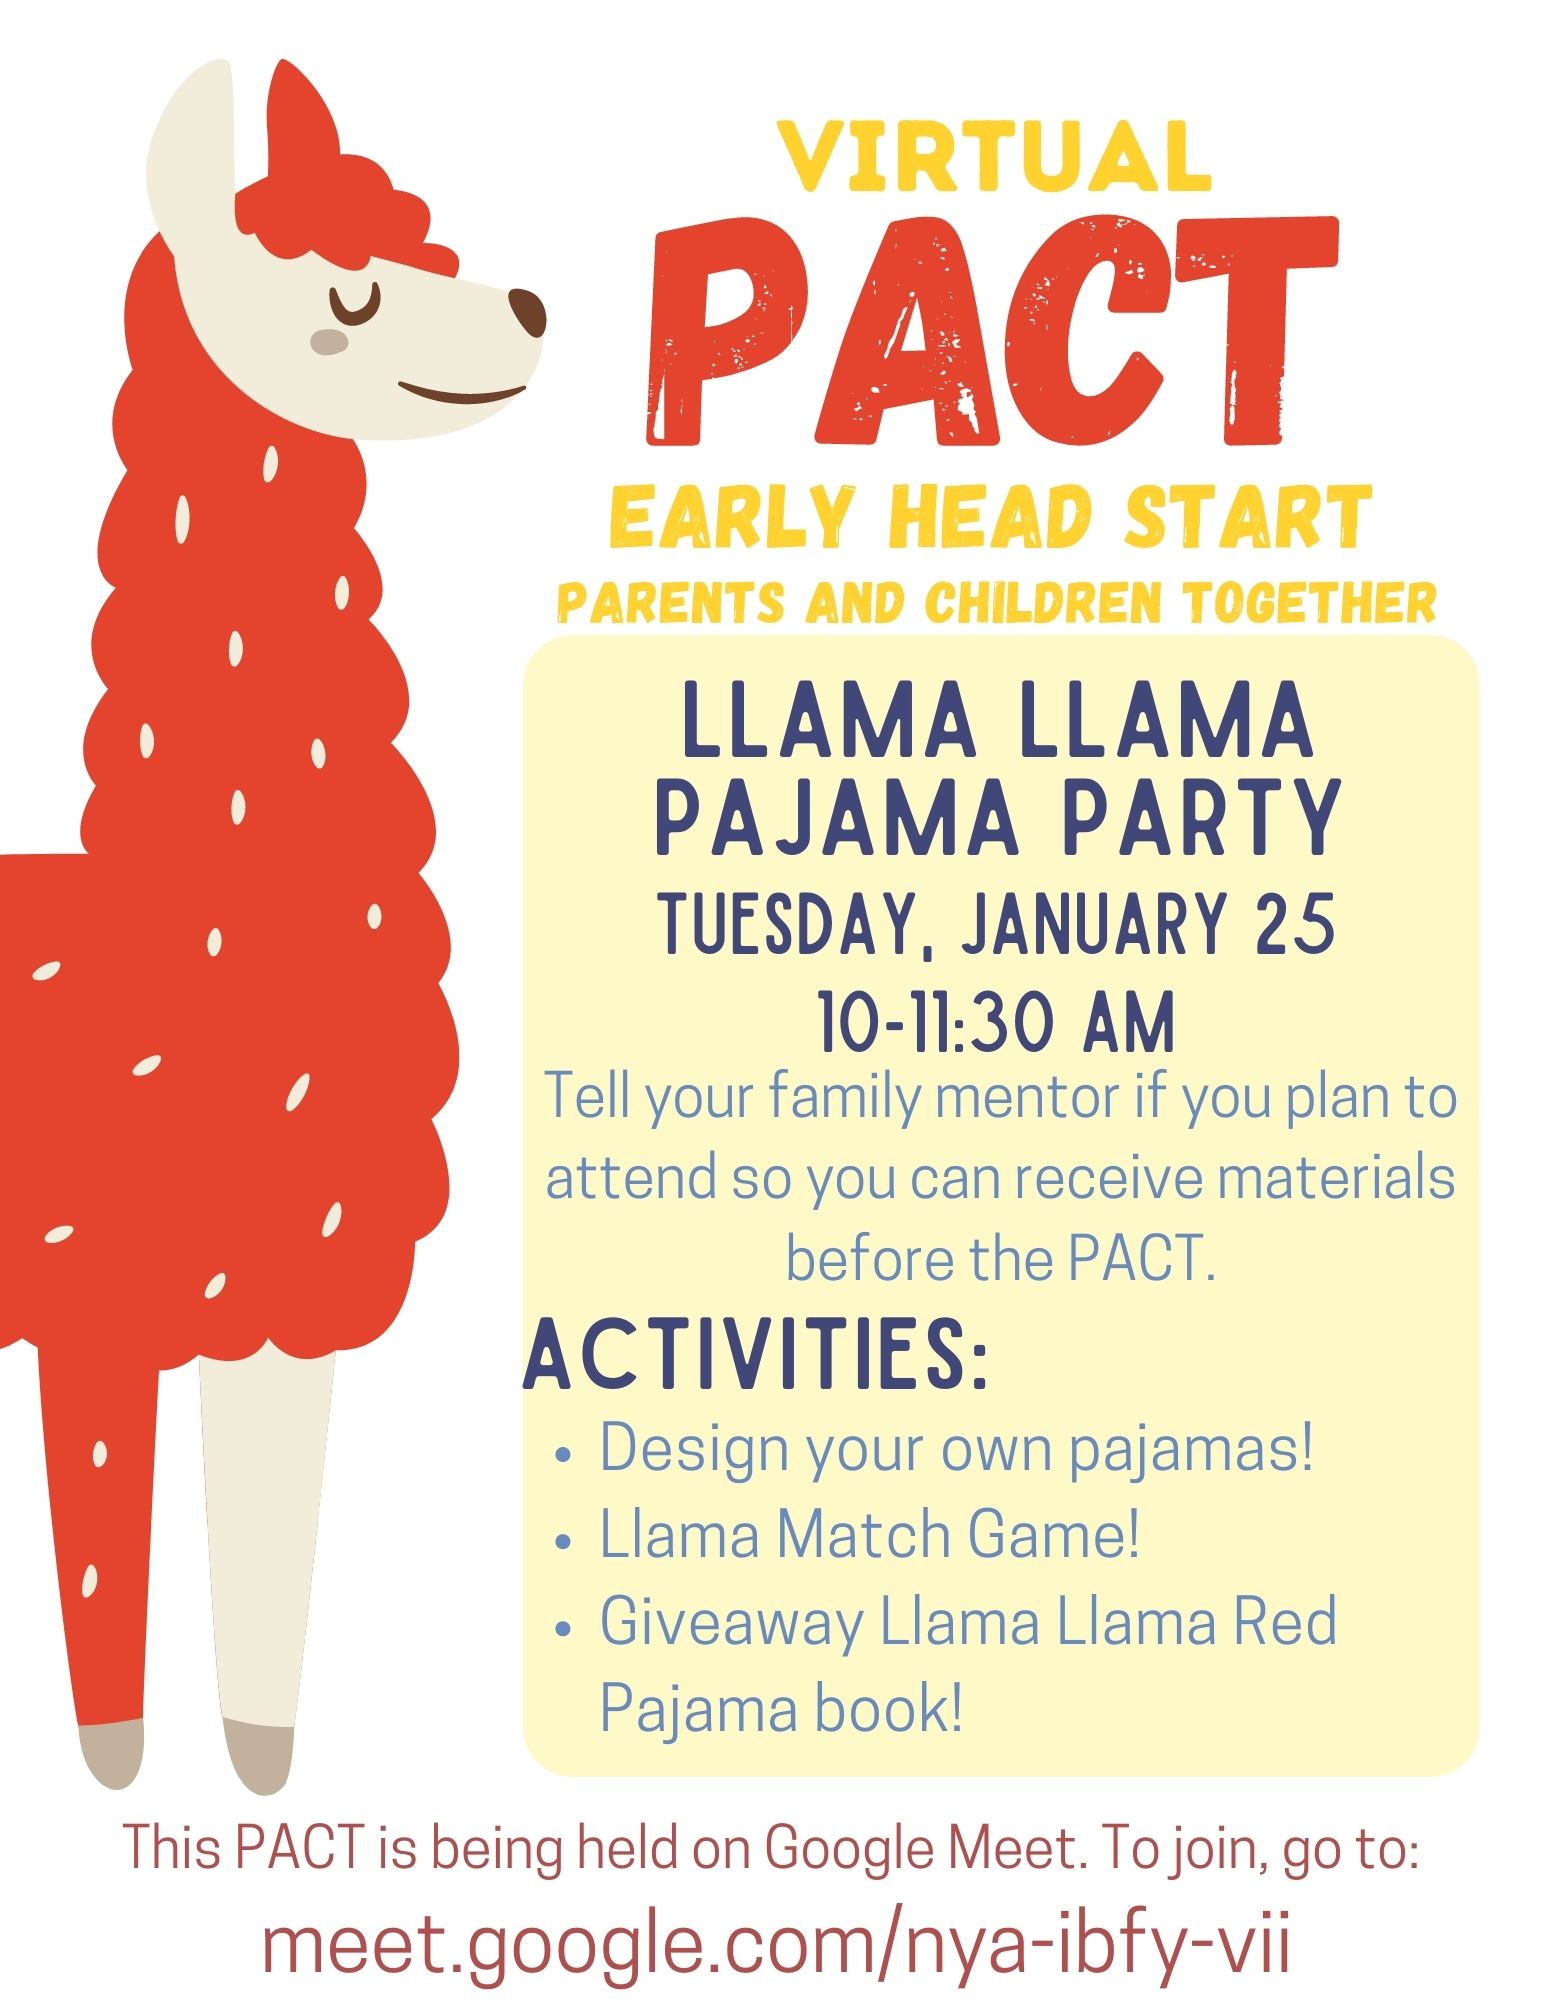 Llama Llama Pajama Party Virtual PACT flyer